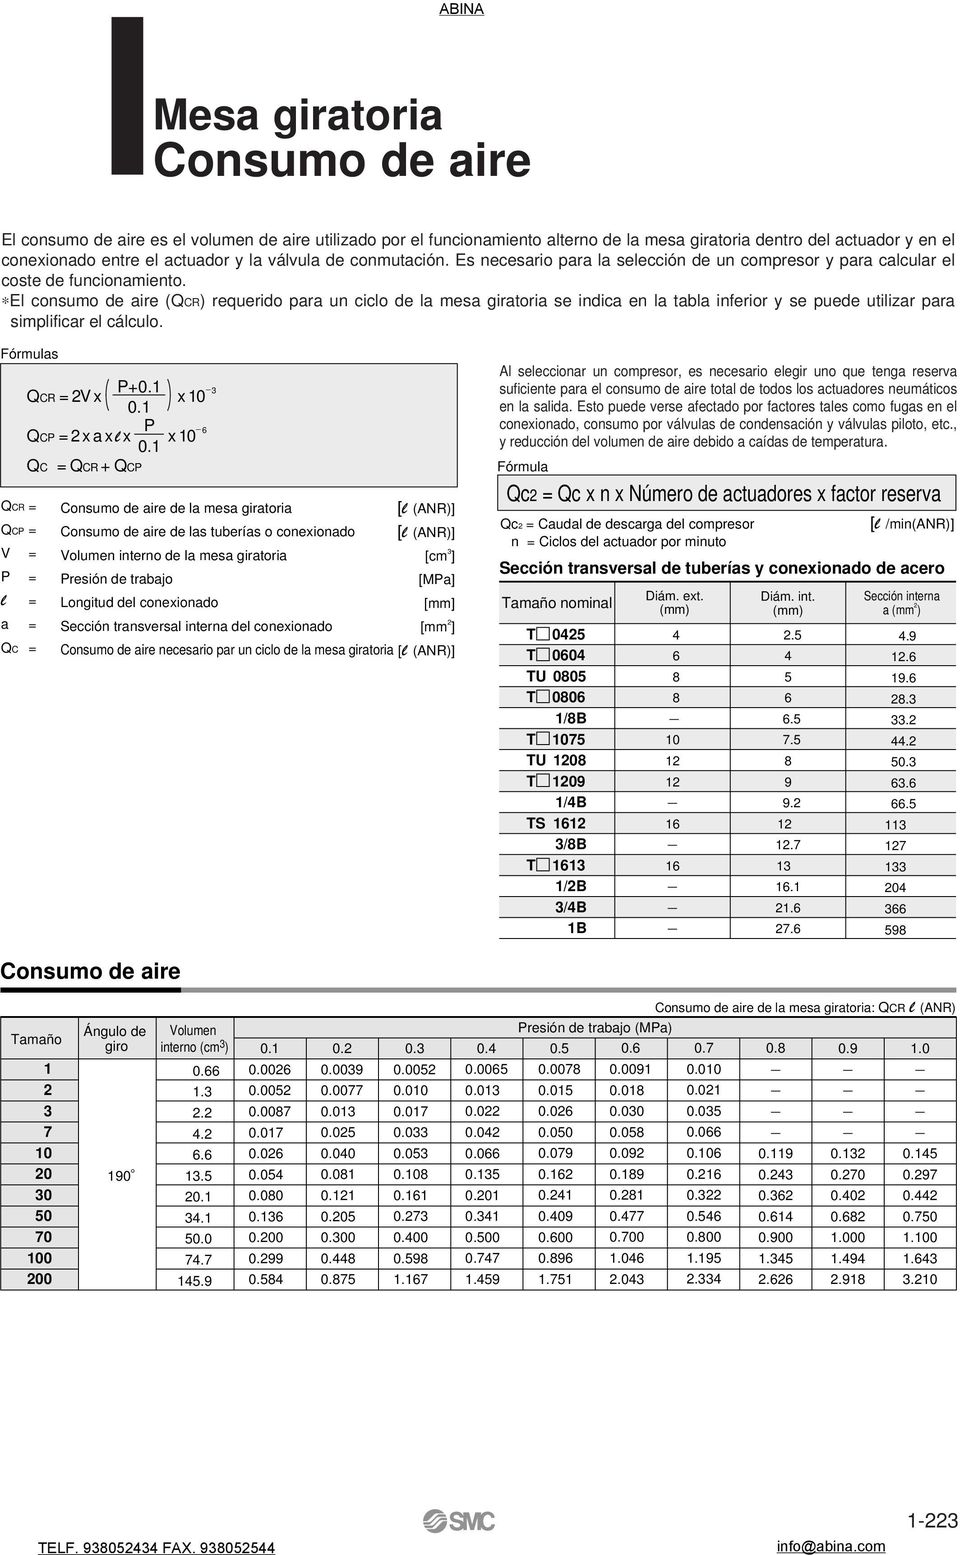 El consumo de aire (QCR) requerido para un ciclo de la mesa giratoria se indica en la tabla inferior y se puede utilizar para simplificar el cálculo. Fórmulas QCR QCP V P l a QC P+0. QCR = V x x 0.